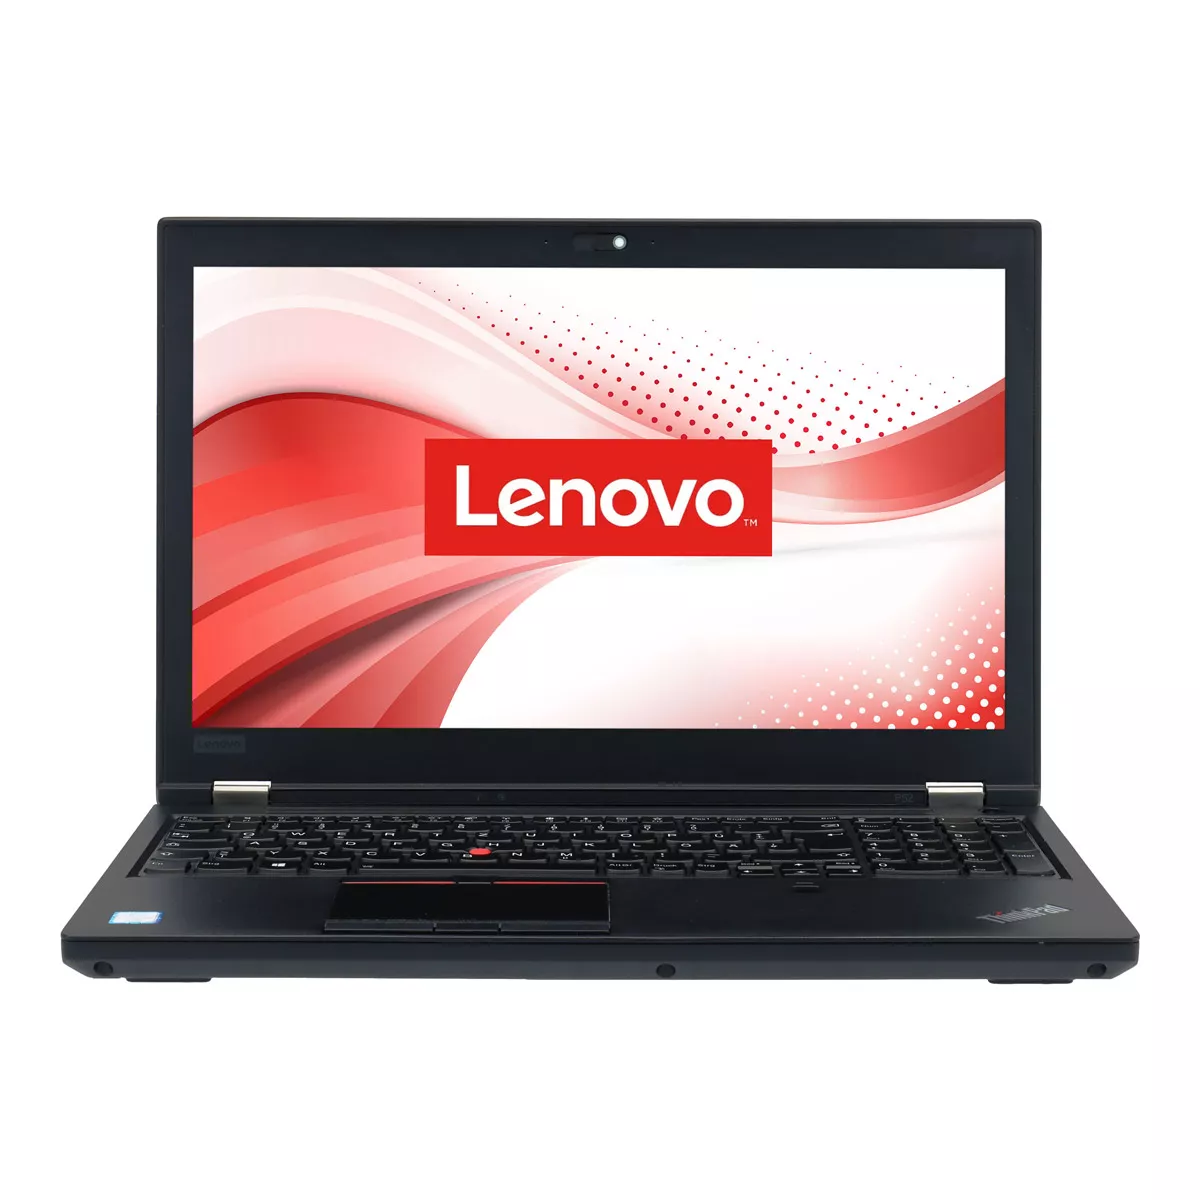 Lenovo ThinkPad P52 Core i7 8750H nVidia Quadro P1000M 32 GB 500 GB M.2 SSD Webcam A